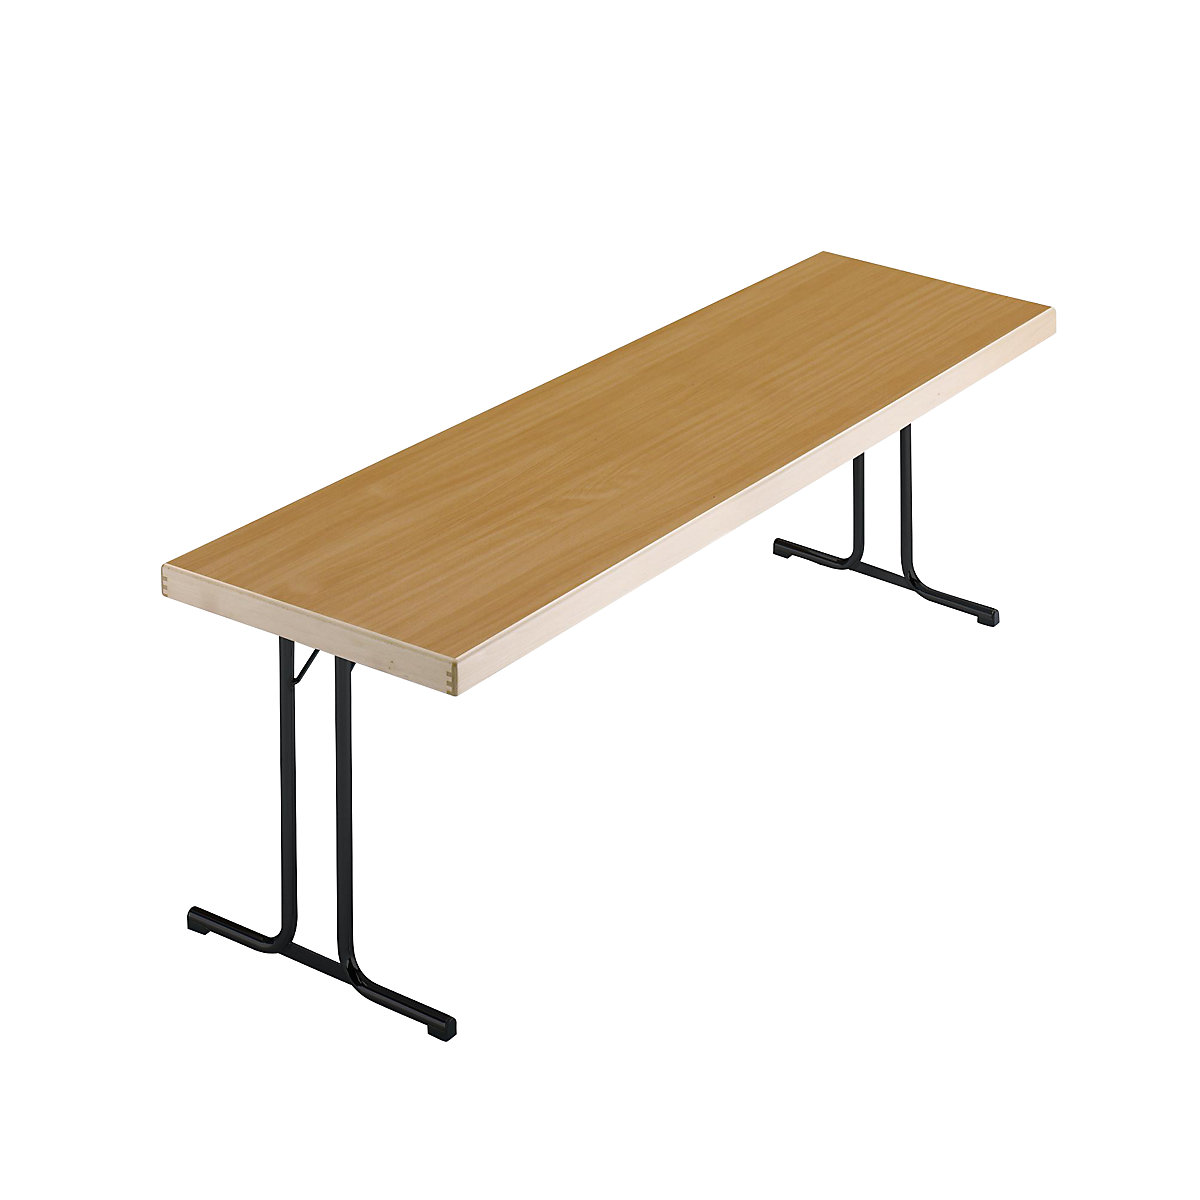 Sklápací stôl, podstavec s dvojitými nohami tvaru T, 1700 x 700 mm, podstavec antracitová, doska vzor buk-8